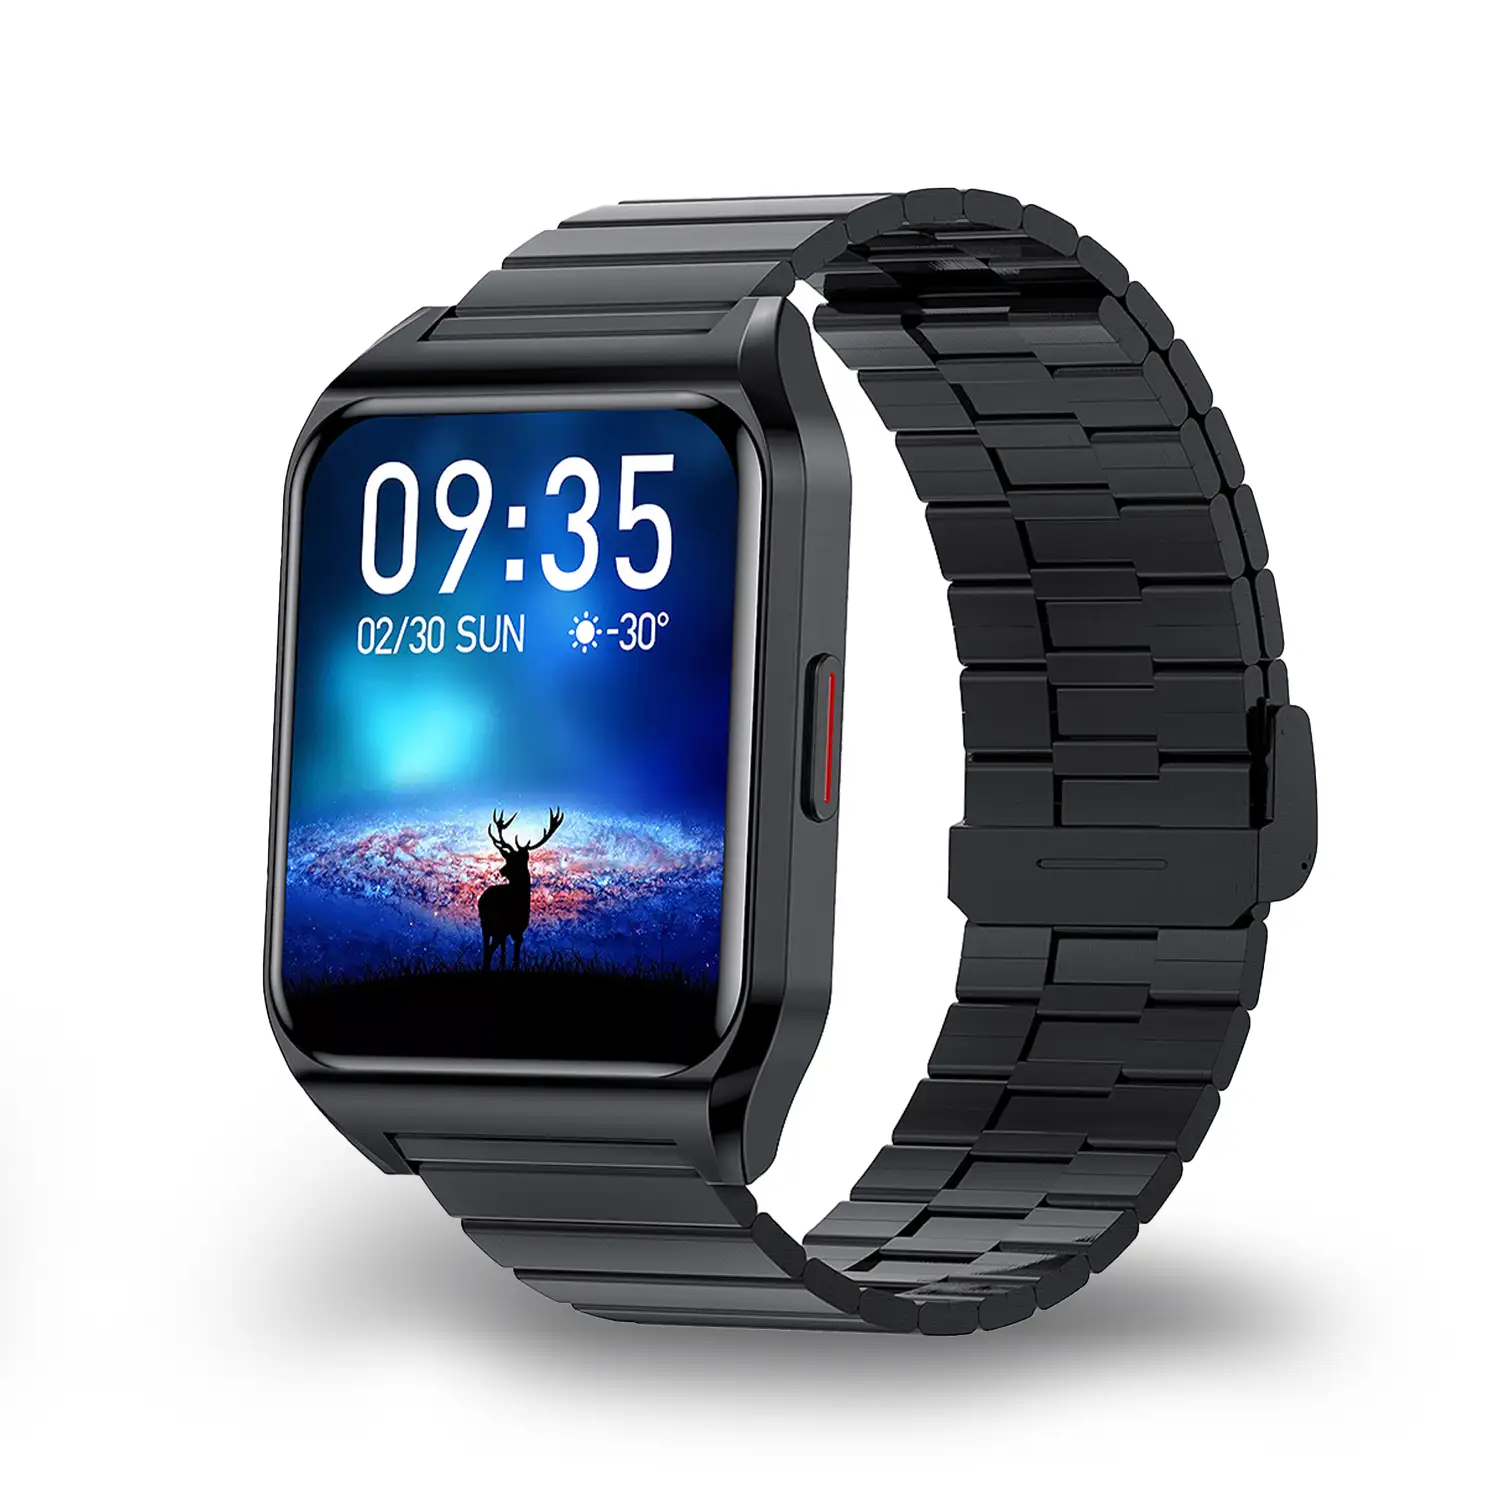 Smartwatch H60 con notificaciones de aplicaciones, 7 modos deportivos. Monitor de salud con termómetro. Correa de metal.